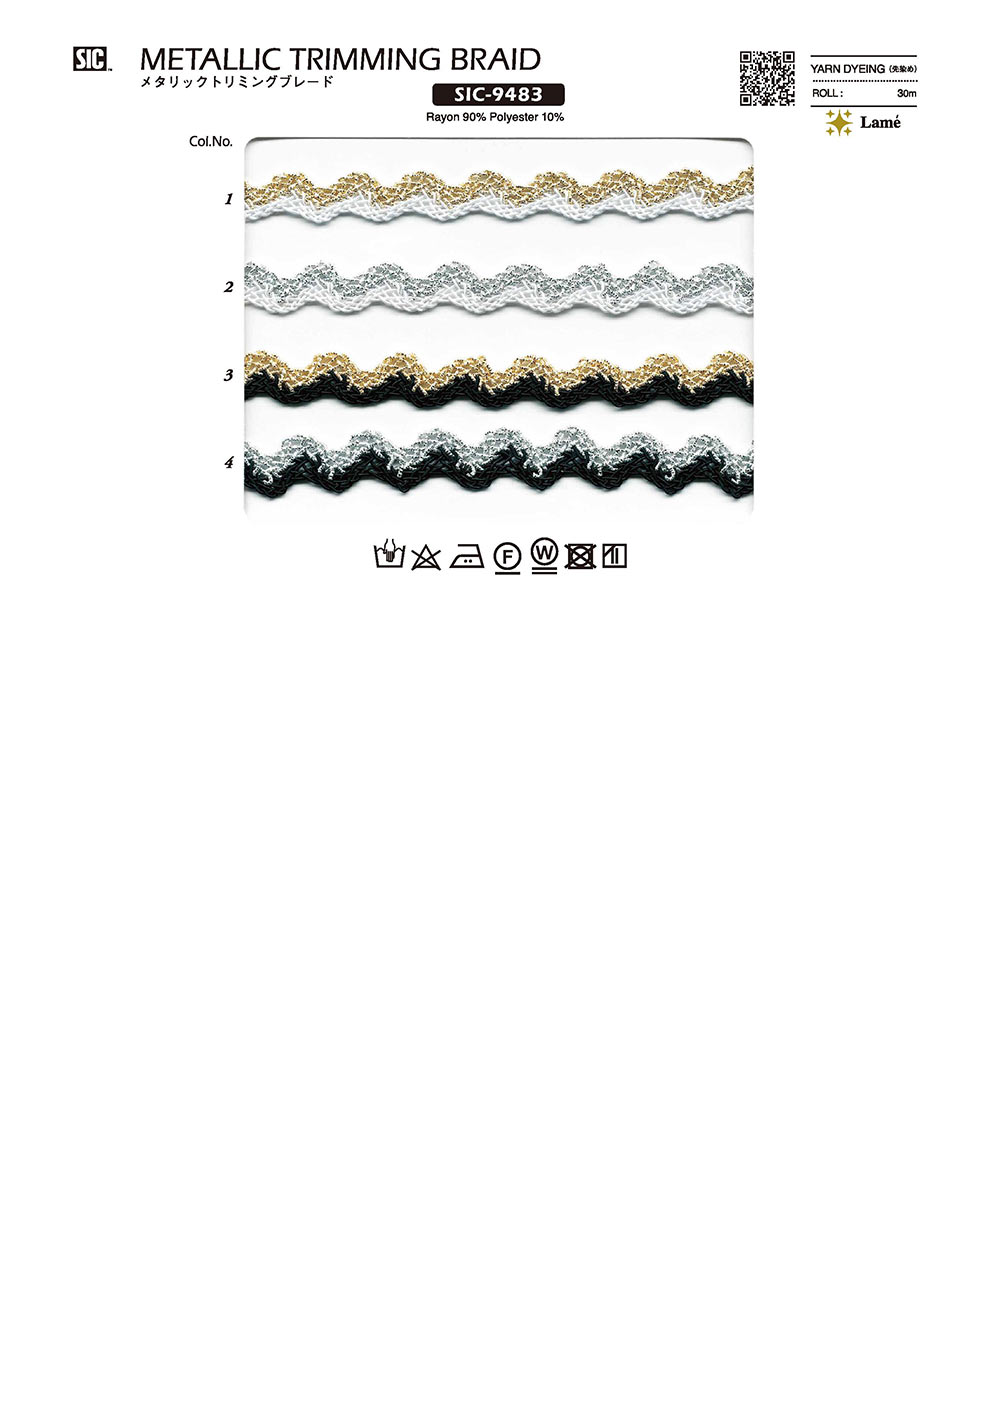 SIC-9483 Metallic Trimming Braid[Ribbon Tape Cord] SHINDO(SIC)